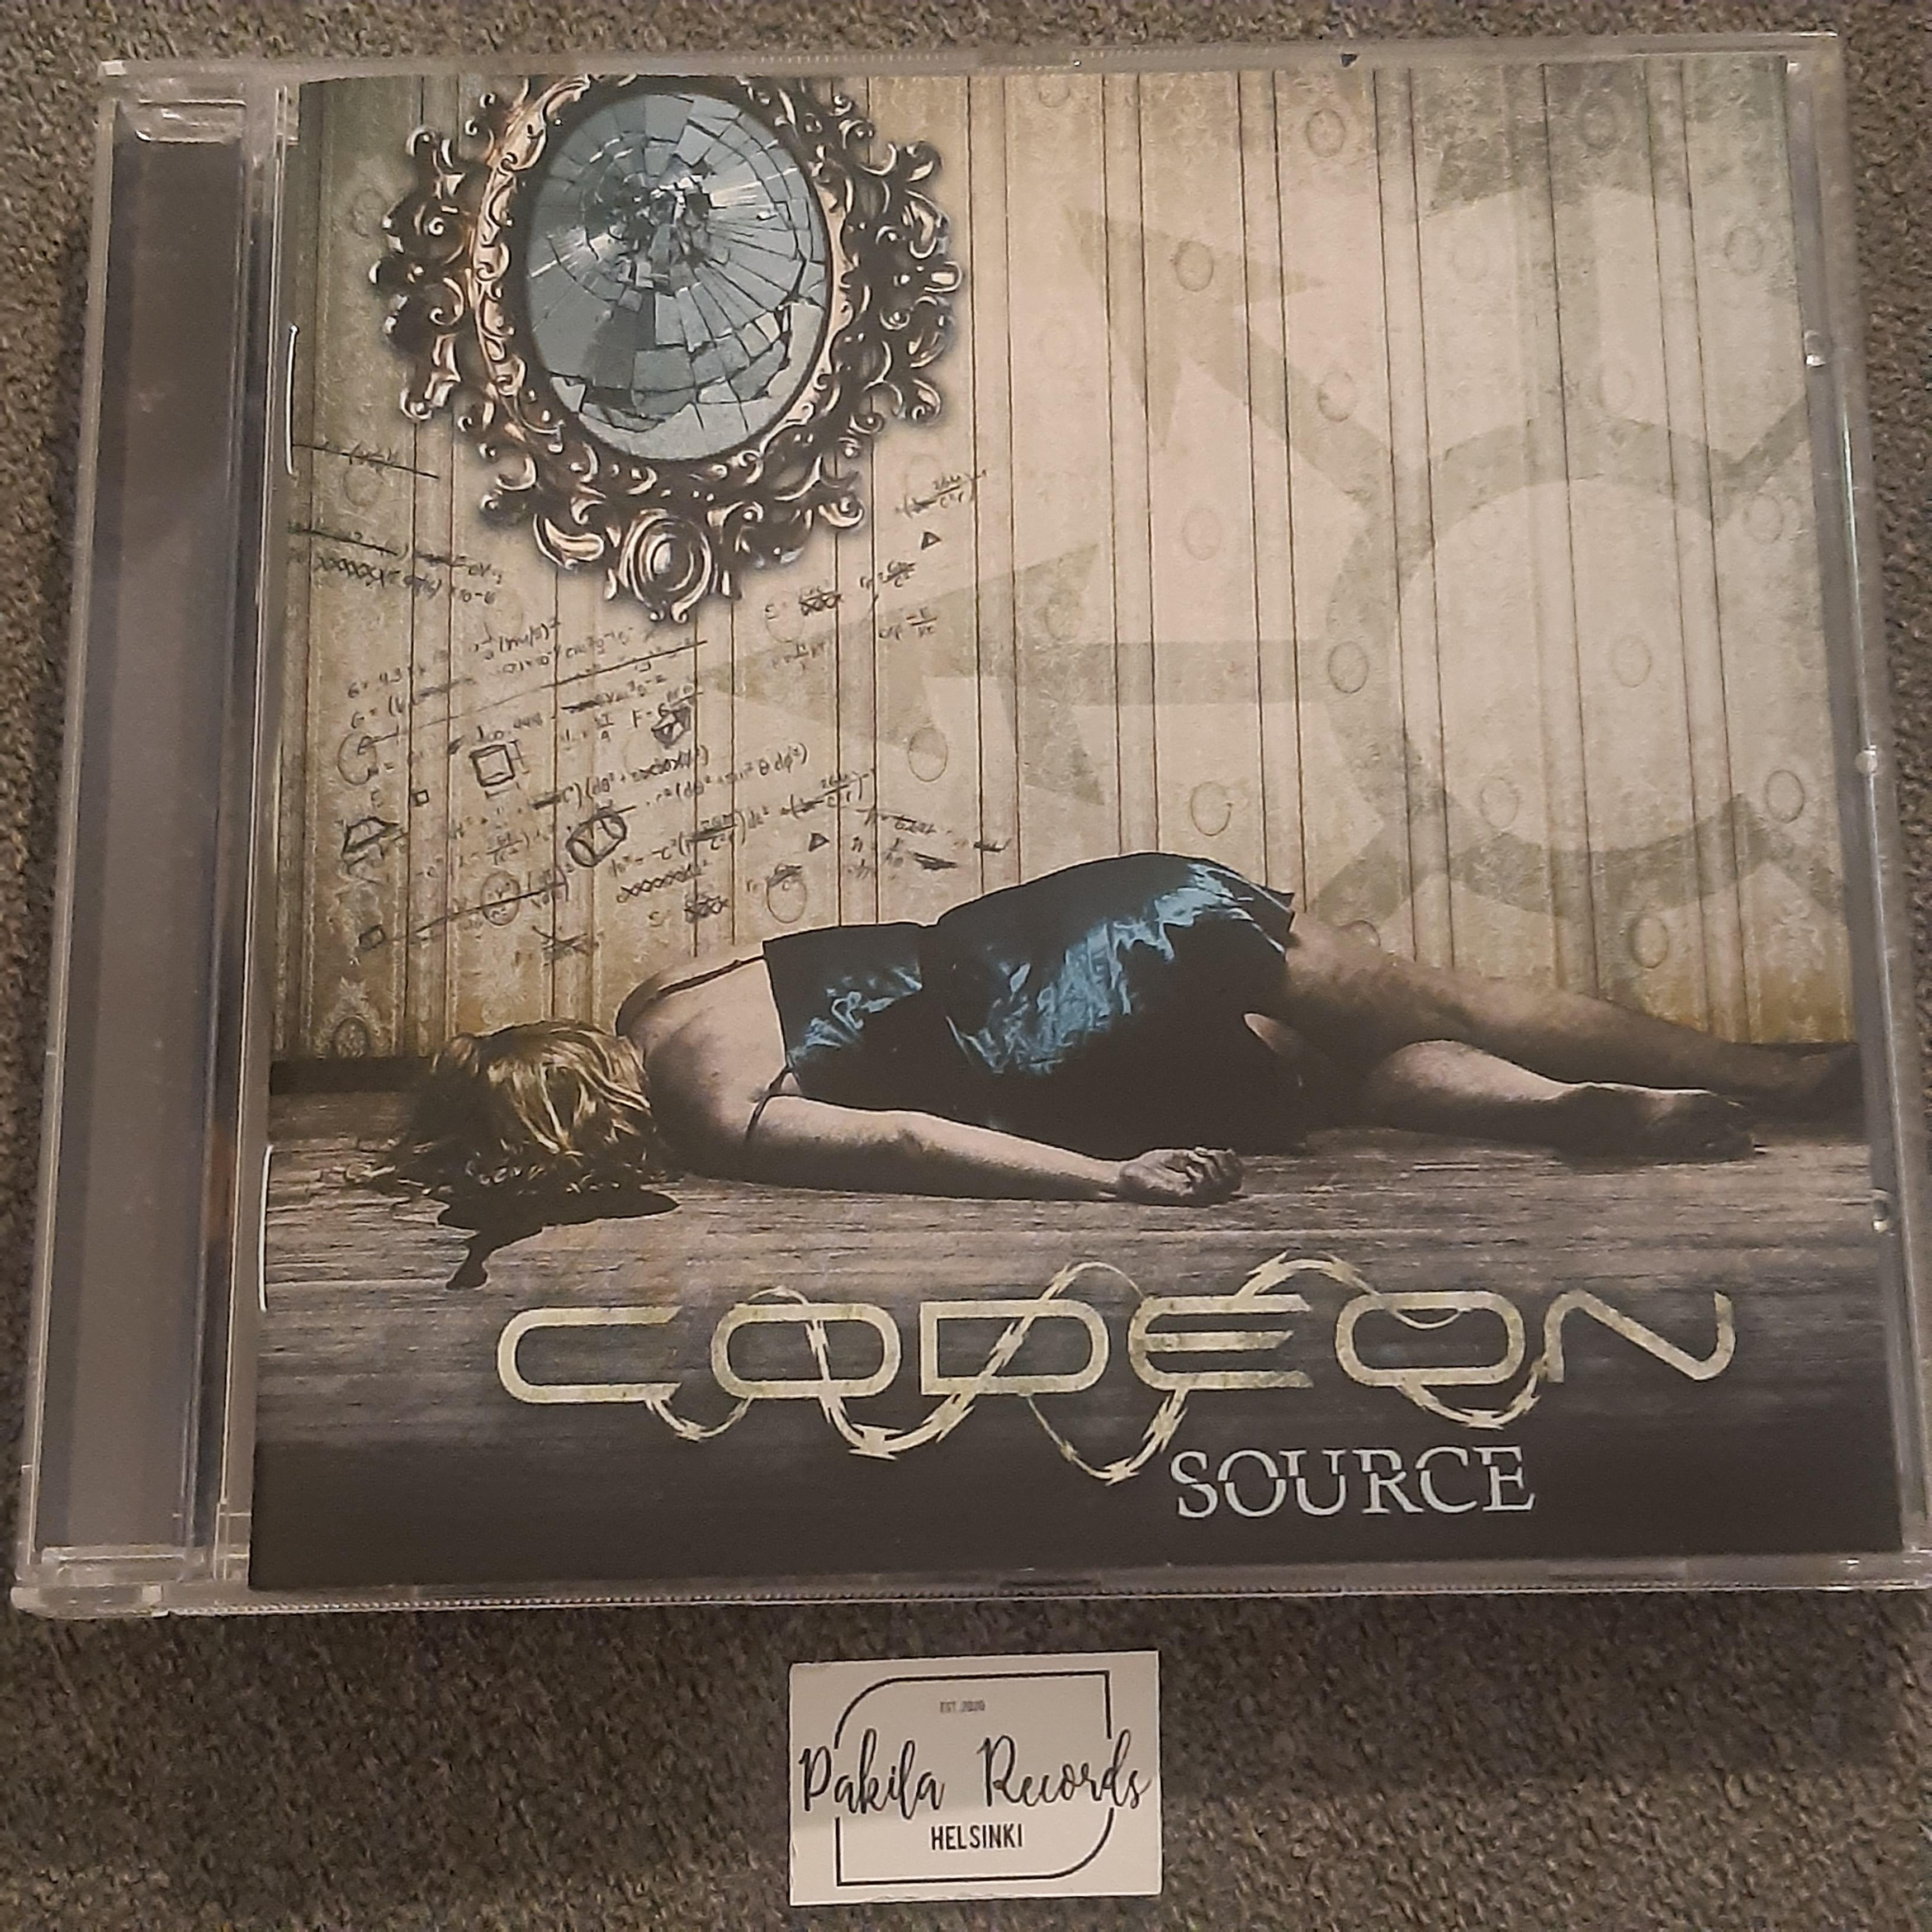 Codeon - Source - CD (käytetty)